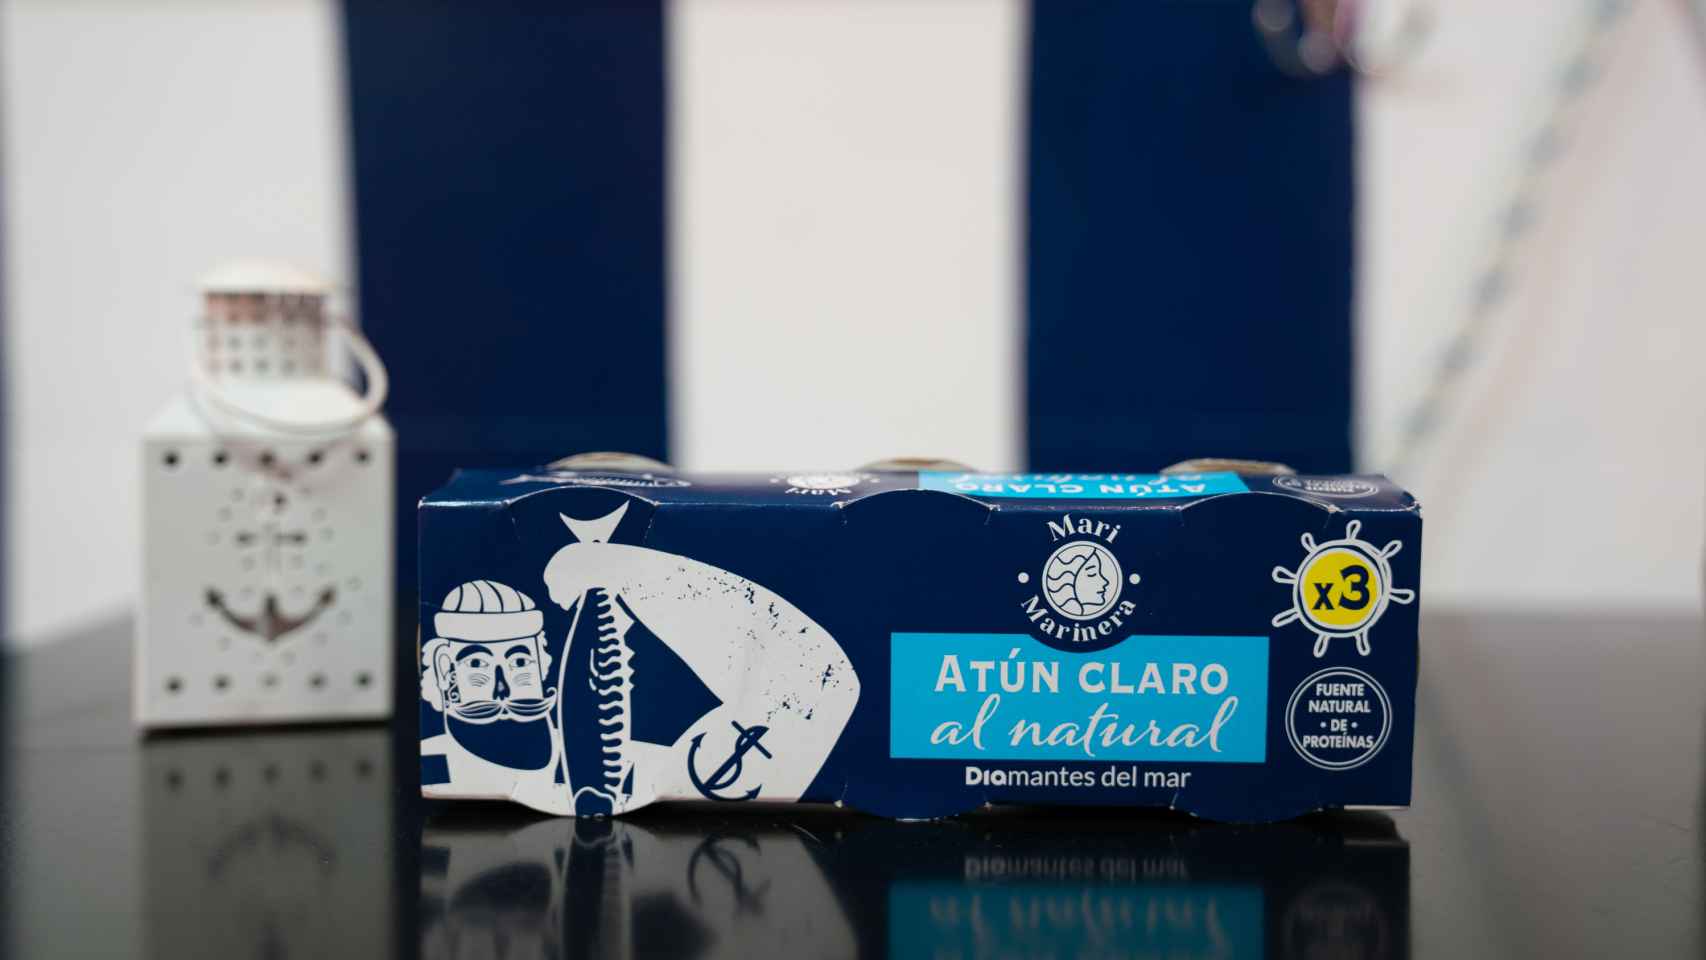 El 'pack' de latas de atún de Diamantes del mar, la marca blanca de conservas de Dia.